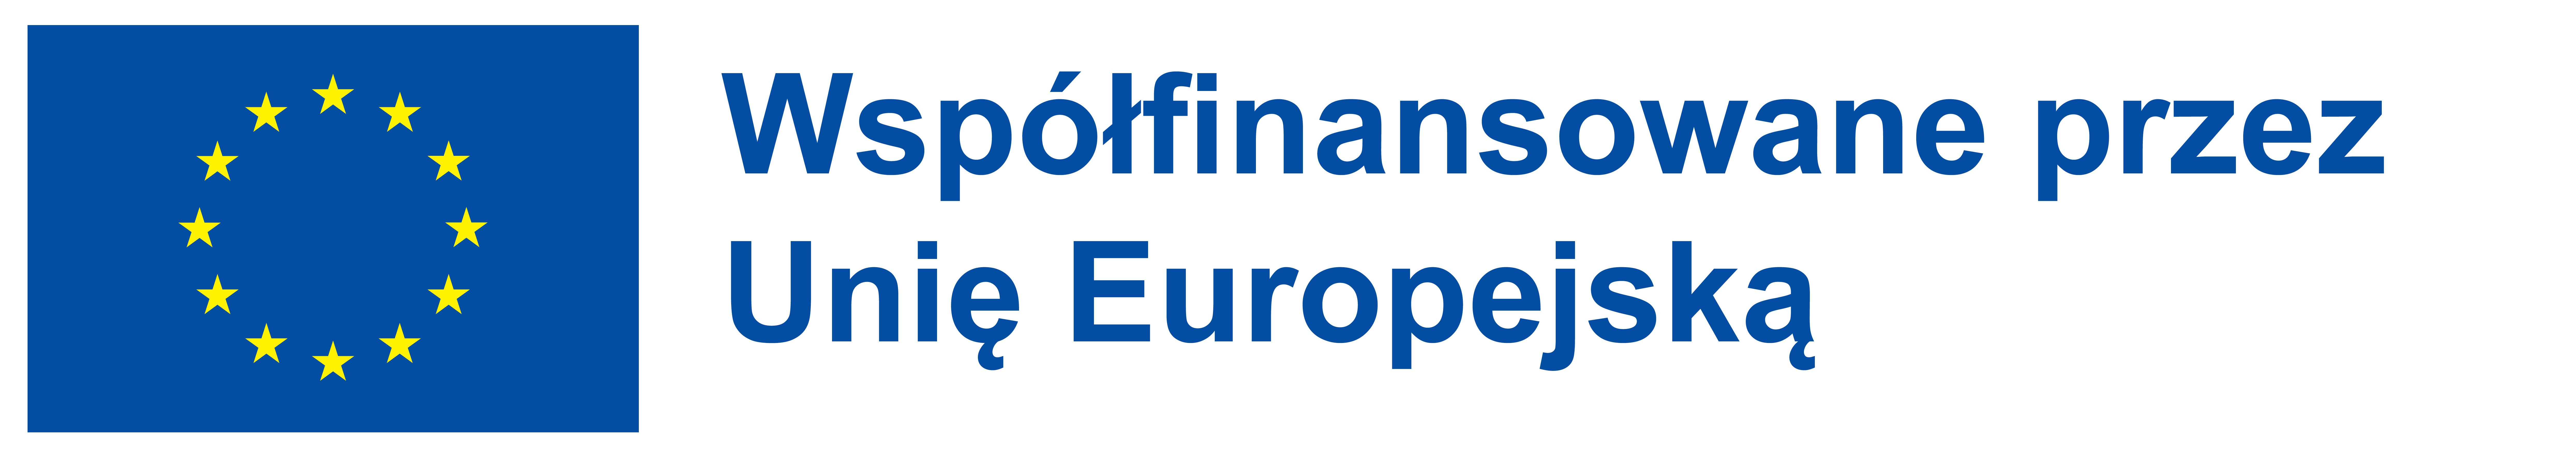 logo pl wspolfinansowane przez EU POS